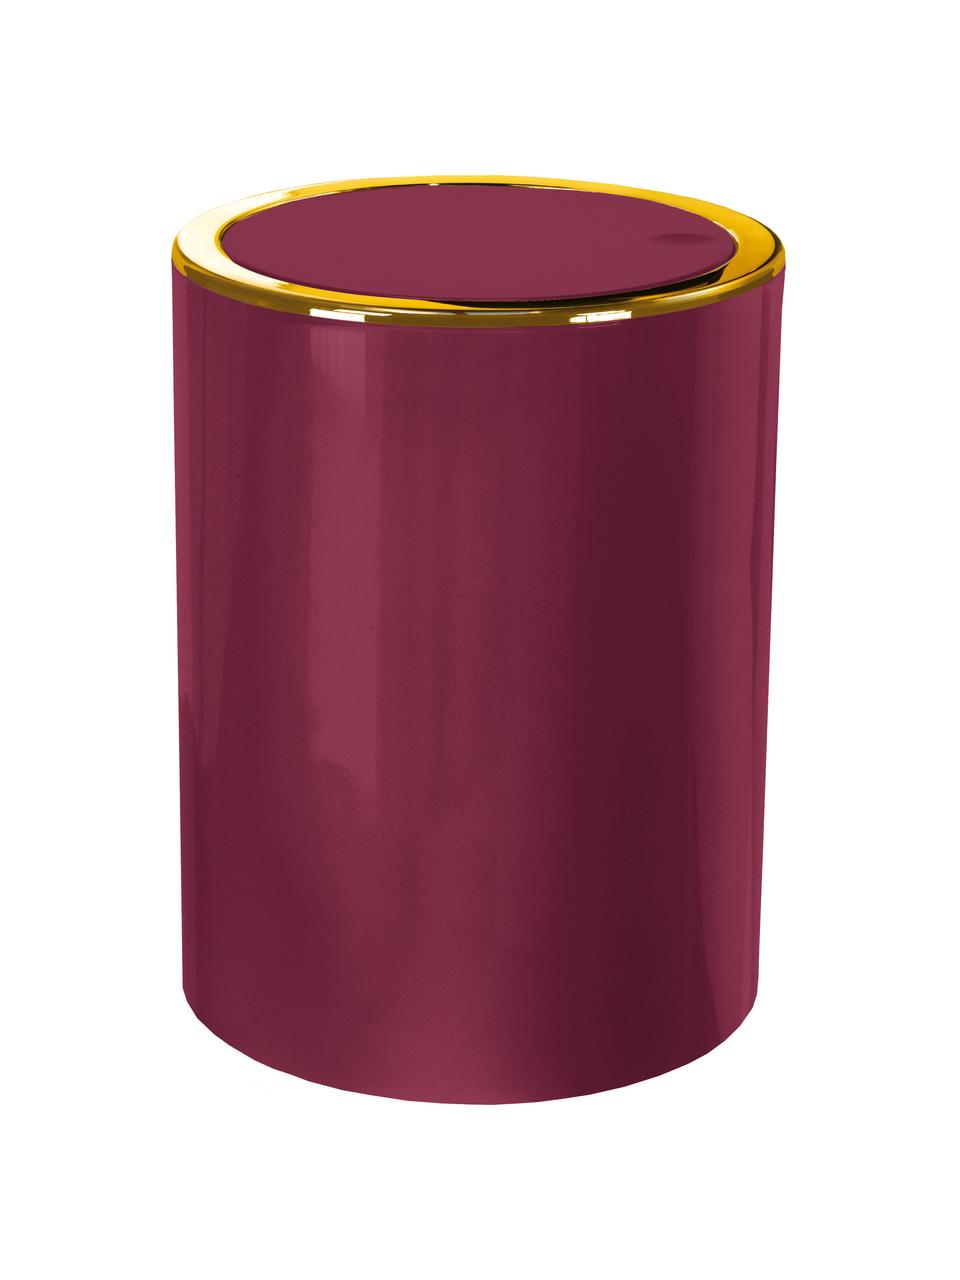 Kosz na śmieci Golden Clap, Tworzywo sztuczne, Burgundowy czerwony, Ø 19 x W 25 cm